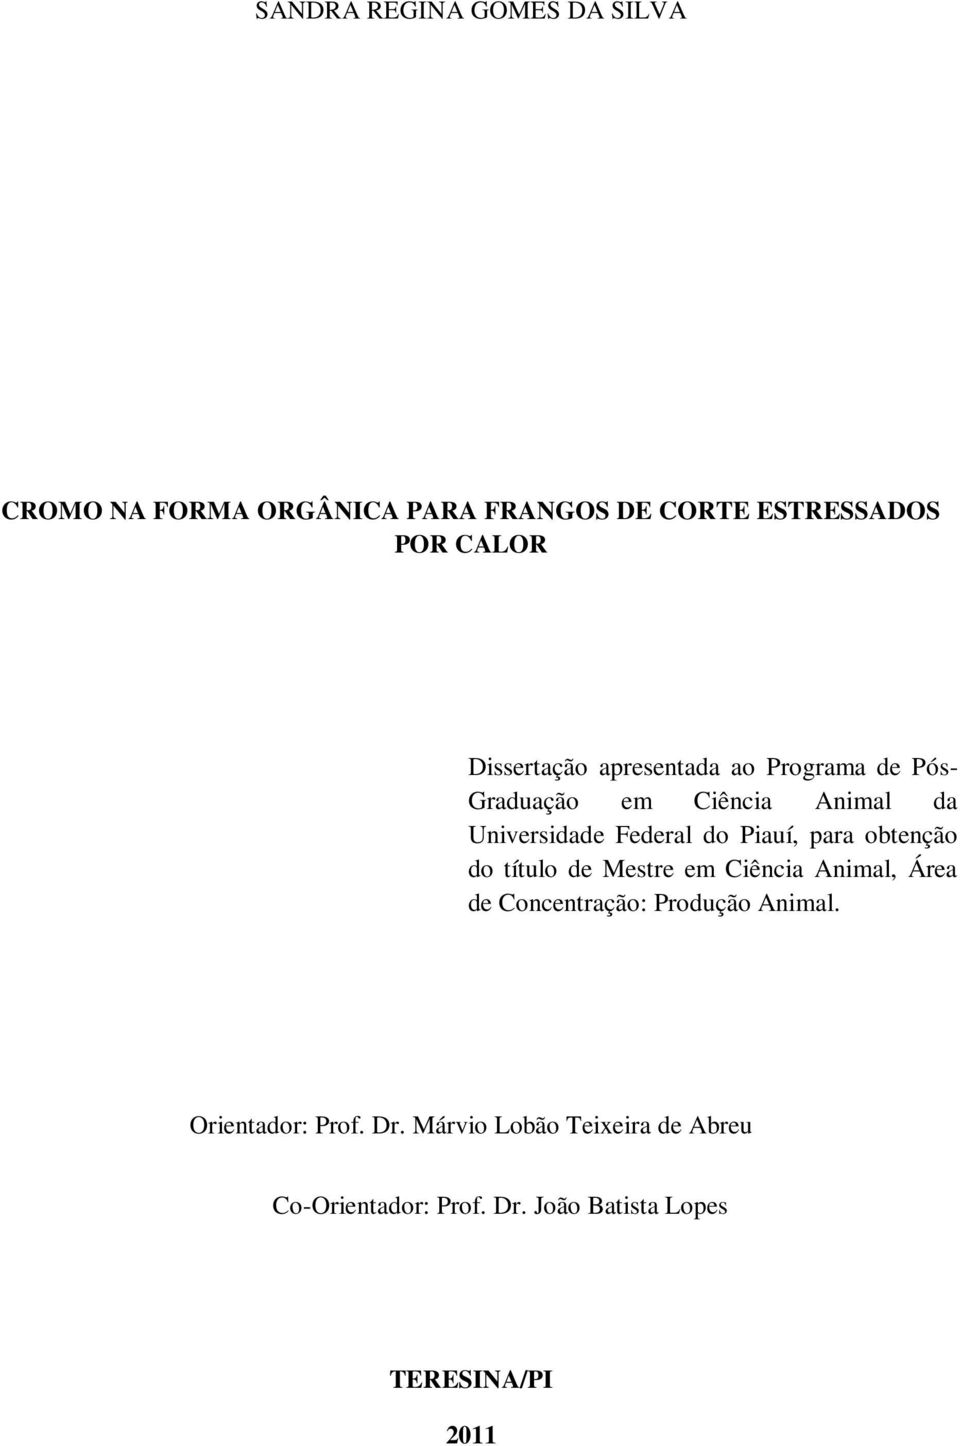 Piauí, para obtenção do título de Mestre em Ciência Animal, Área de Concentração: Produção Animal.